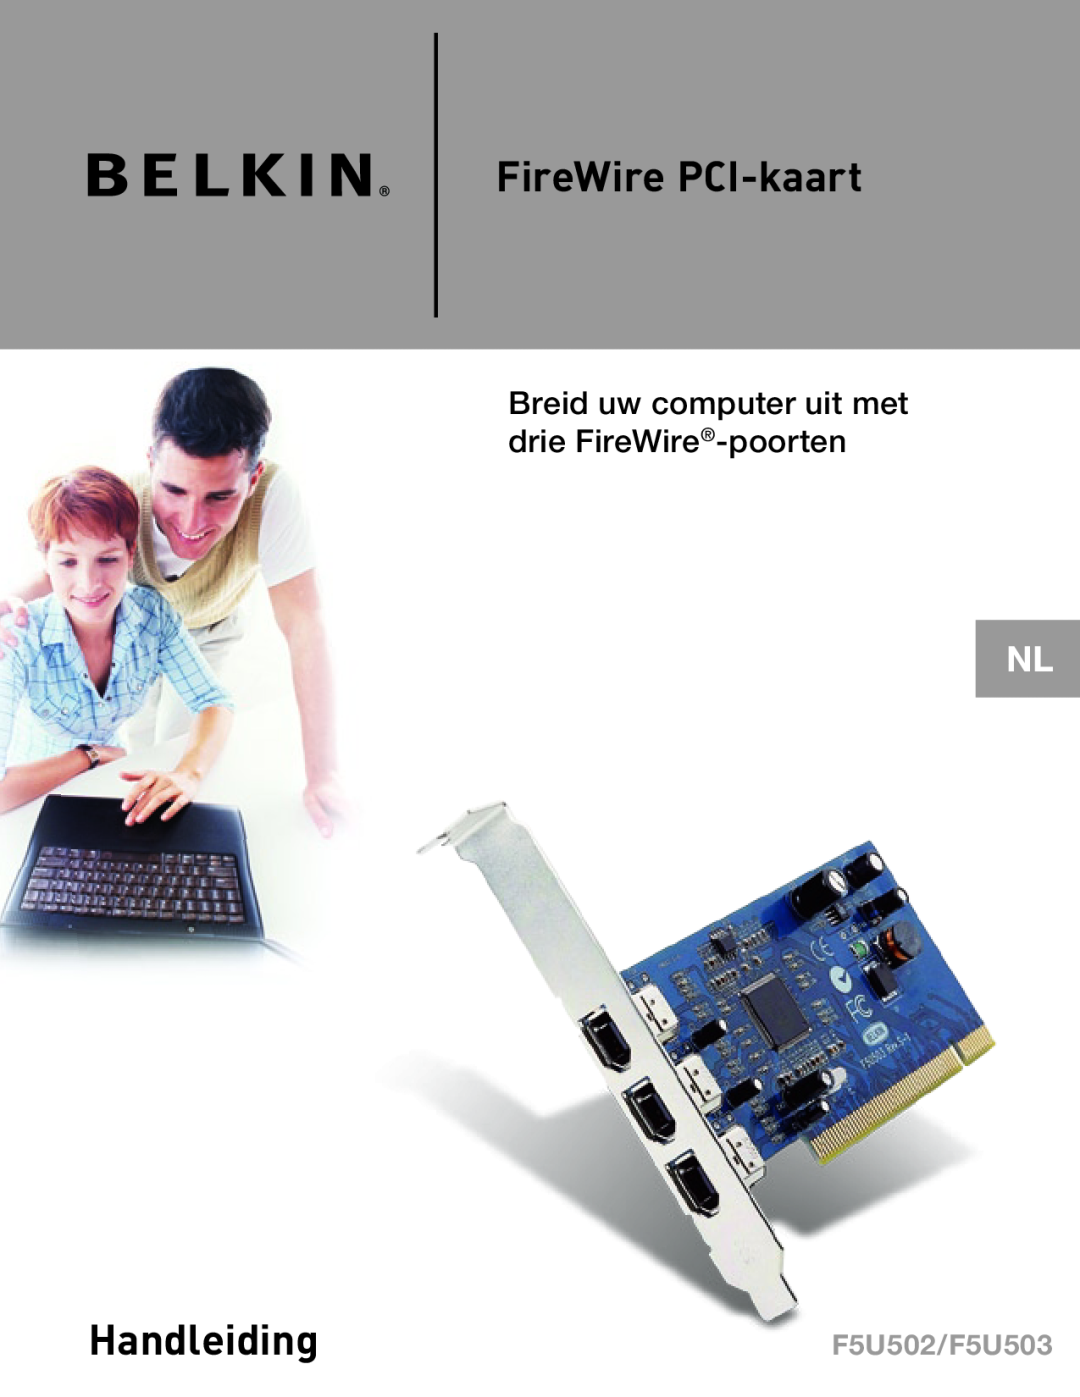 Belkin user manual FireWire PCI-kaart, Handleiding, Breid uw computer uit met drie FireWire-poorten, F5U502/F5U503 